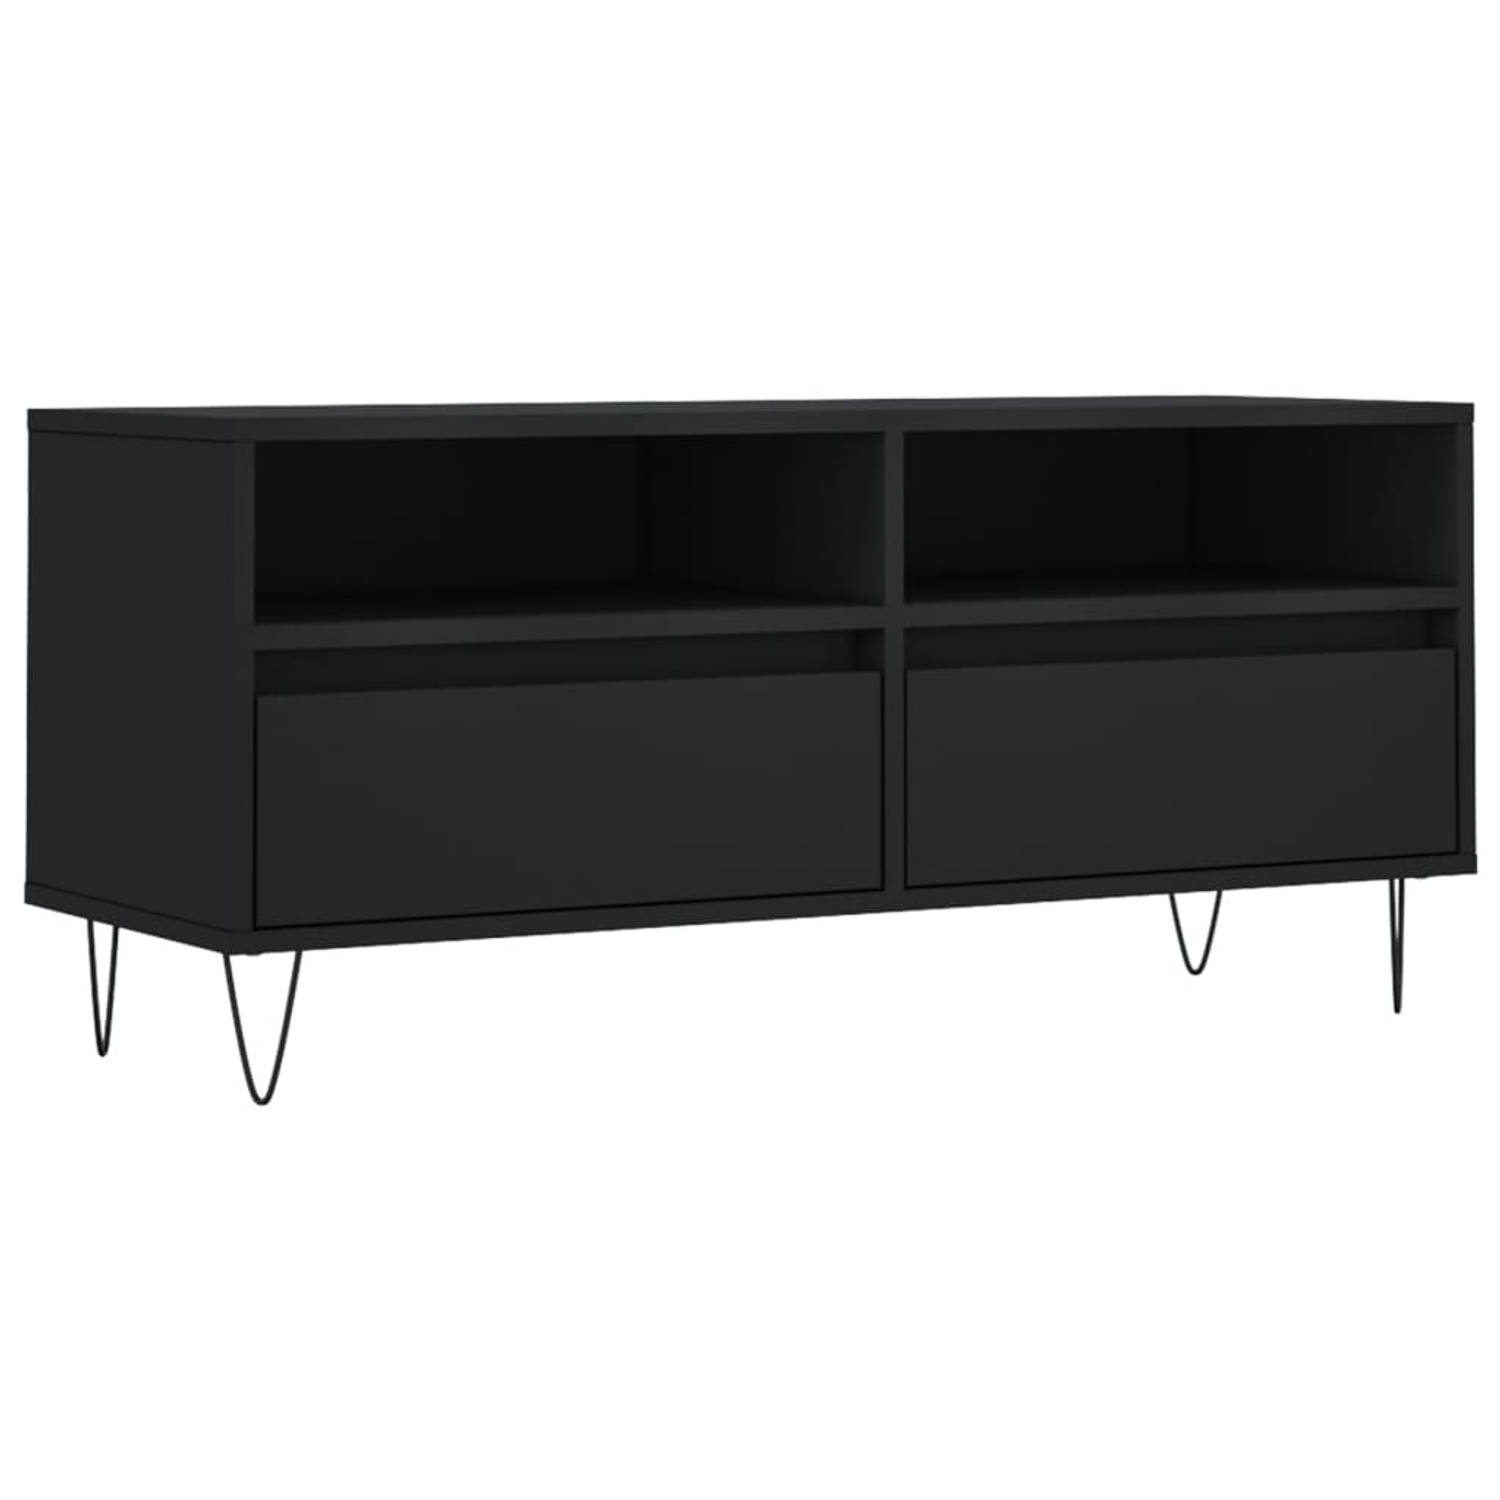 The Living Store TV-meubel - TV-kast en opbergmeubel - 100 x 34.5 x 44.5 cm - Stevig materiaal - voldoende opbergruimte en stabiel tafelblad